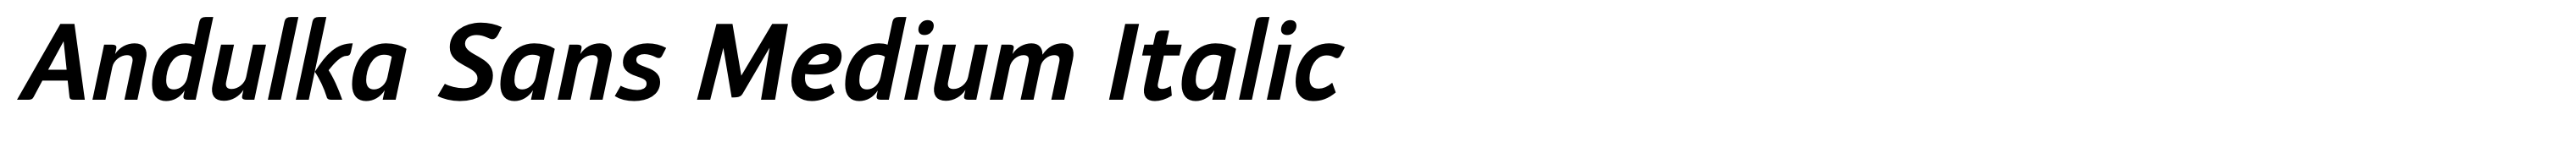 Andulka Sans Medium Italic